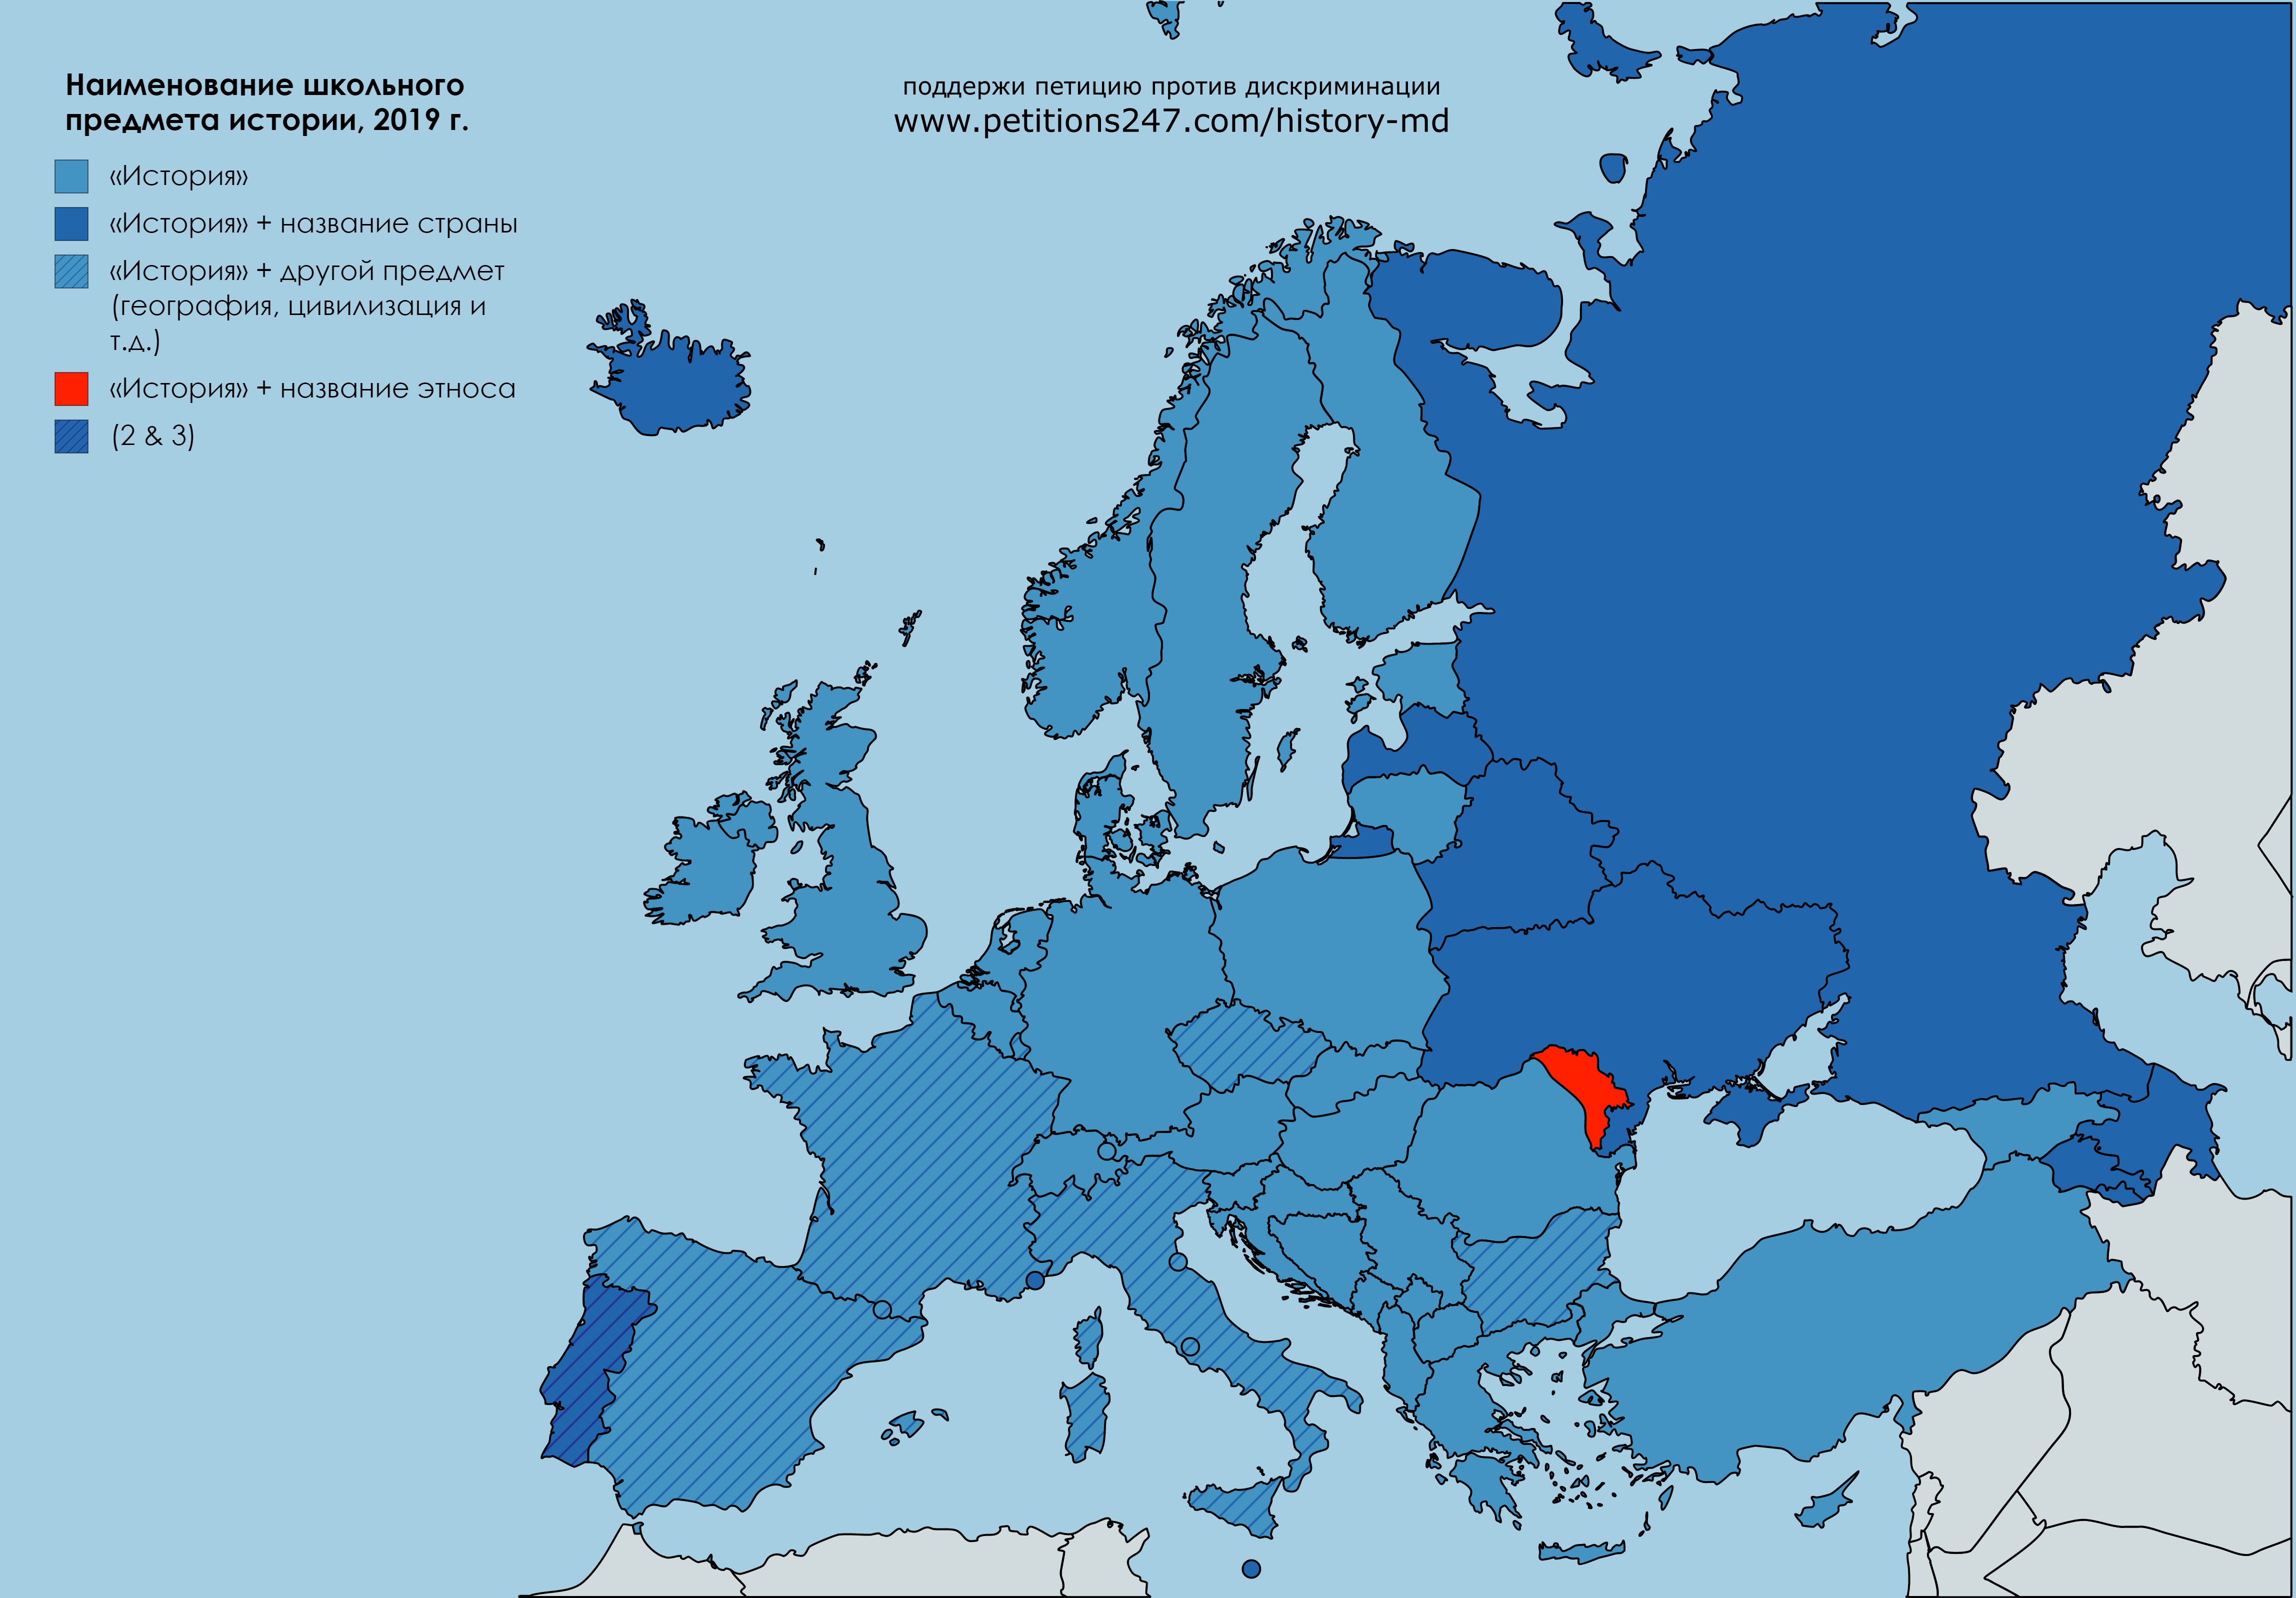 Карта названия школьного предмета истории в европейских странах